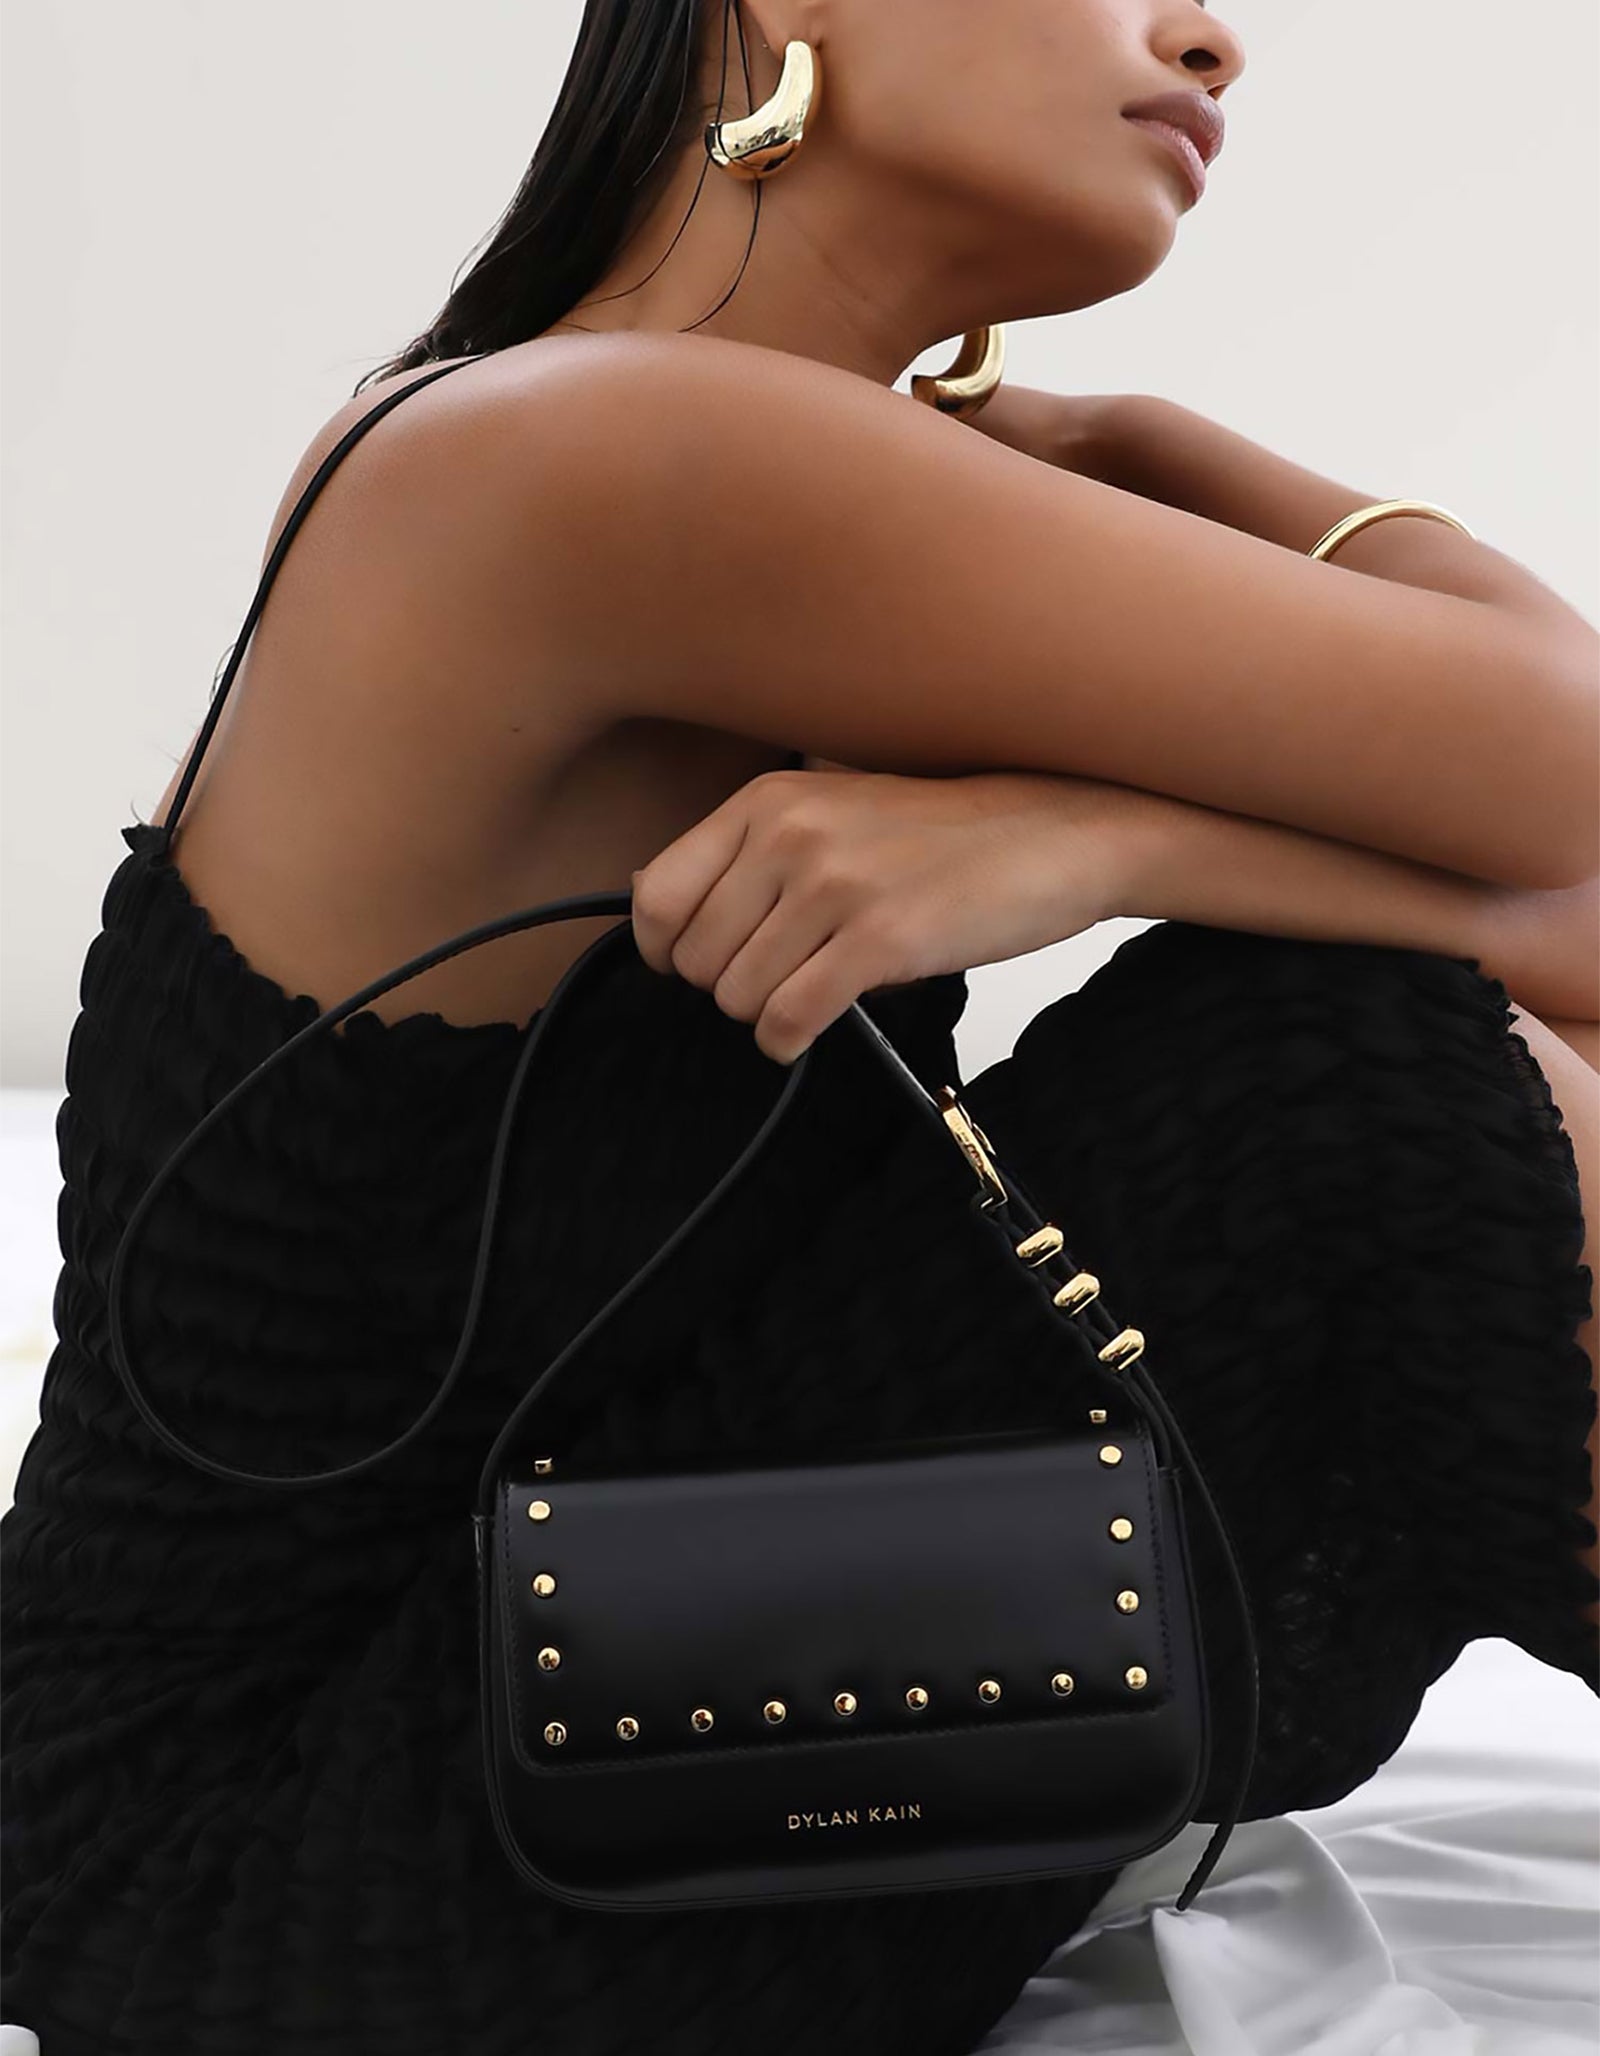 Studded Black Crossbody Clutch Bag Victoria's Secret Purse Tassel Gold  Saddle for sale online | eBay